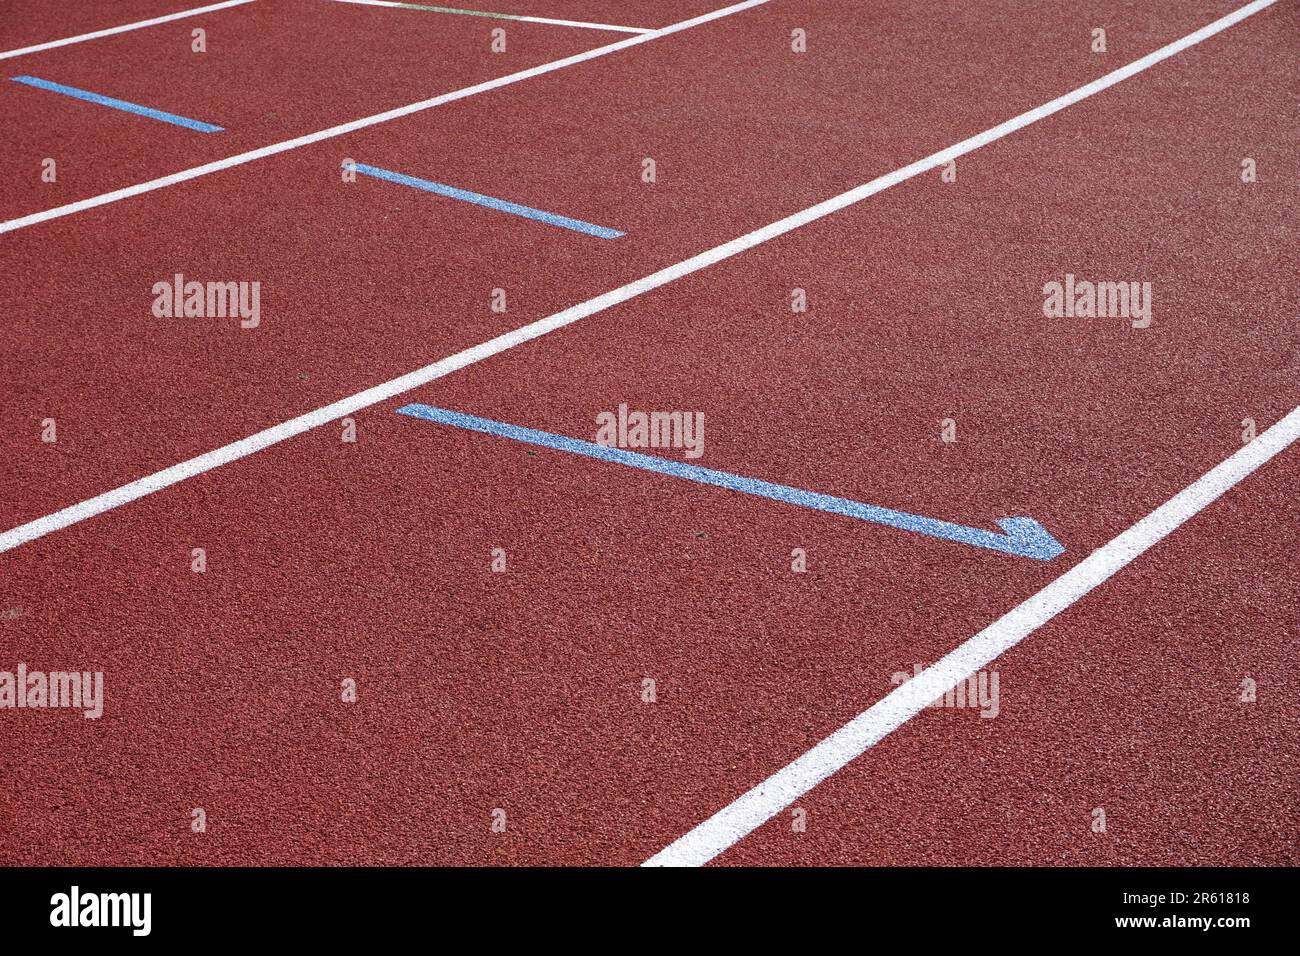 Leichtathletik-Sportstreckenfläche. Gummimaterial im Hintergrund der 400m-Laufstrecke in der Sportarena Stockfoto